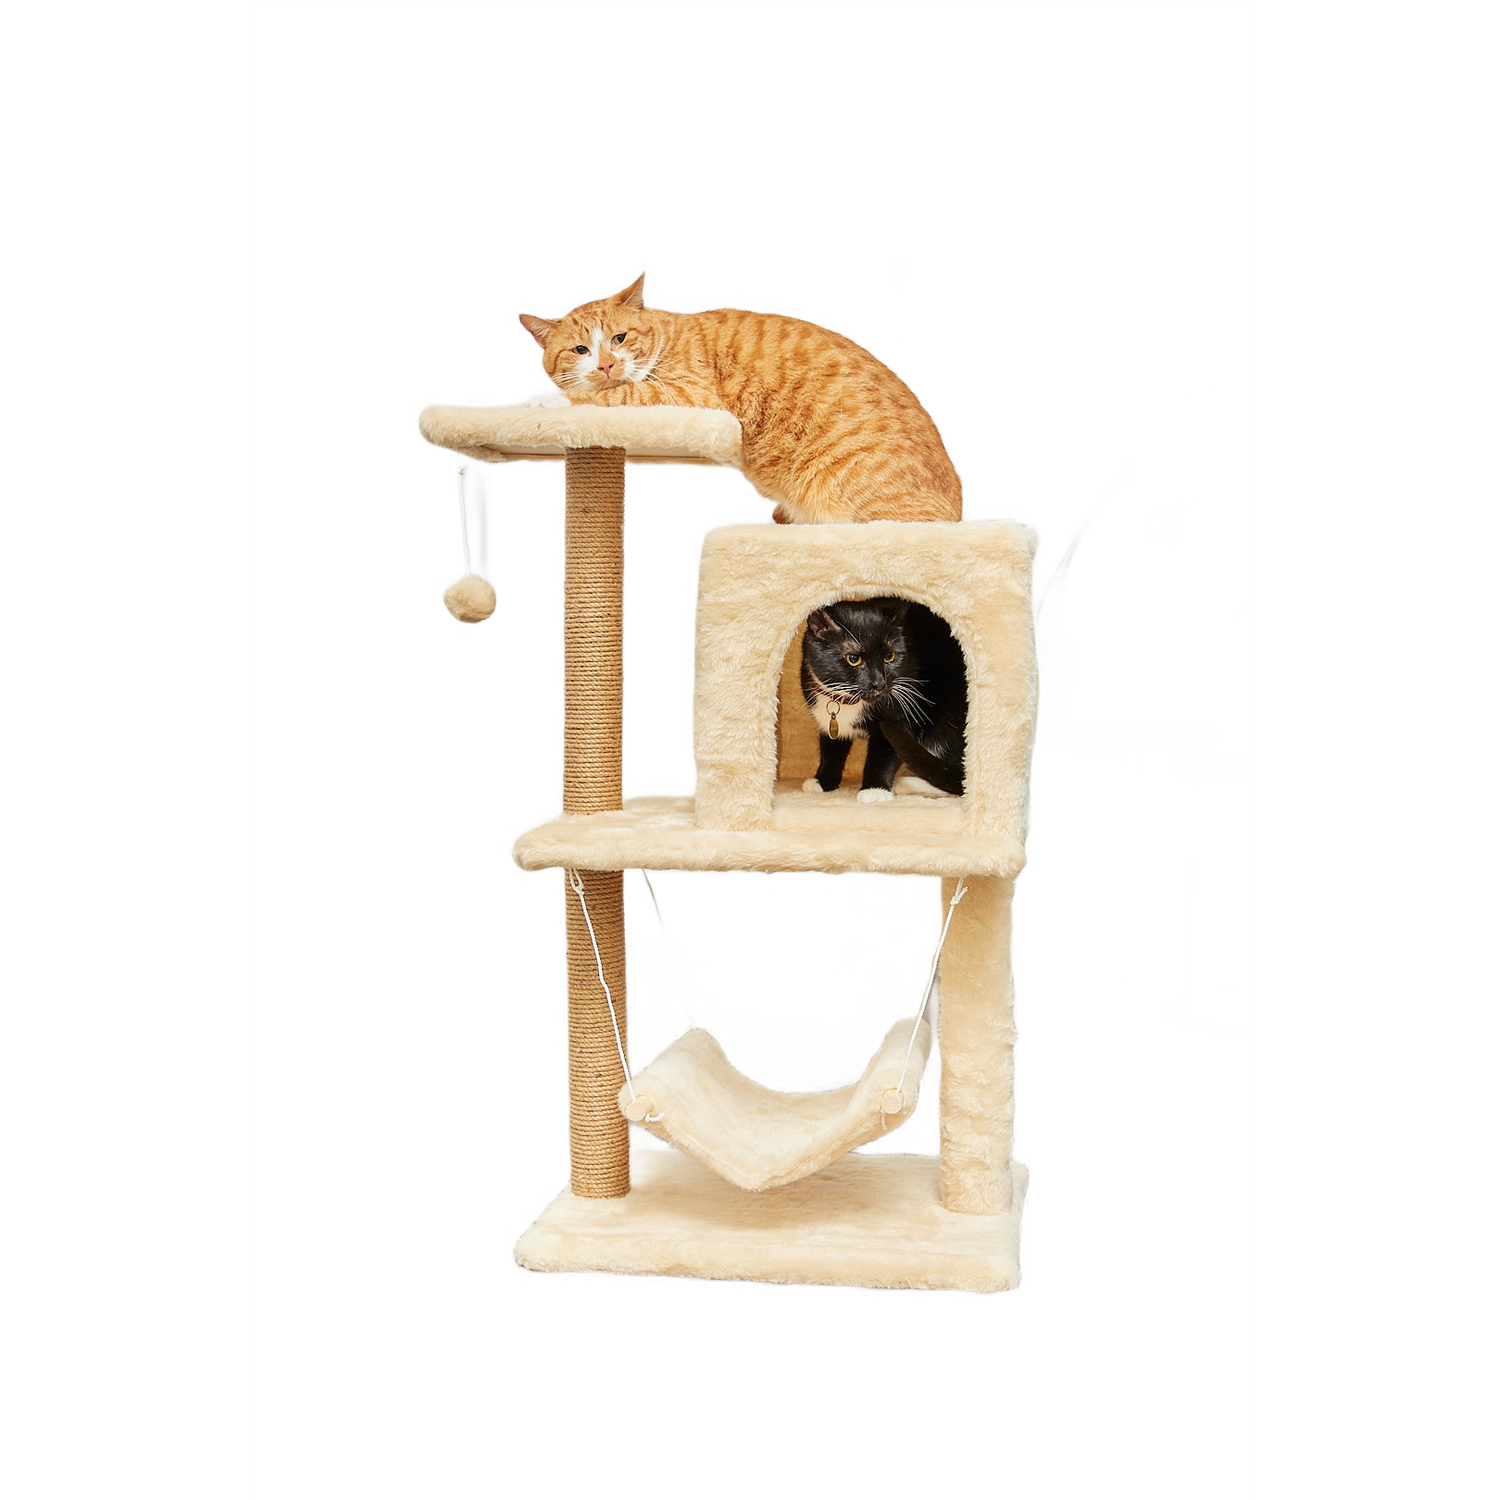 Когтеточка для кошек с домиком БРИСИ Бежевый - фото 1